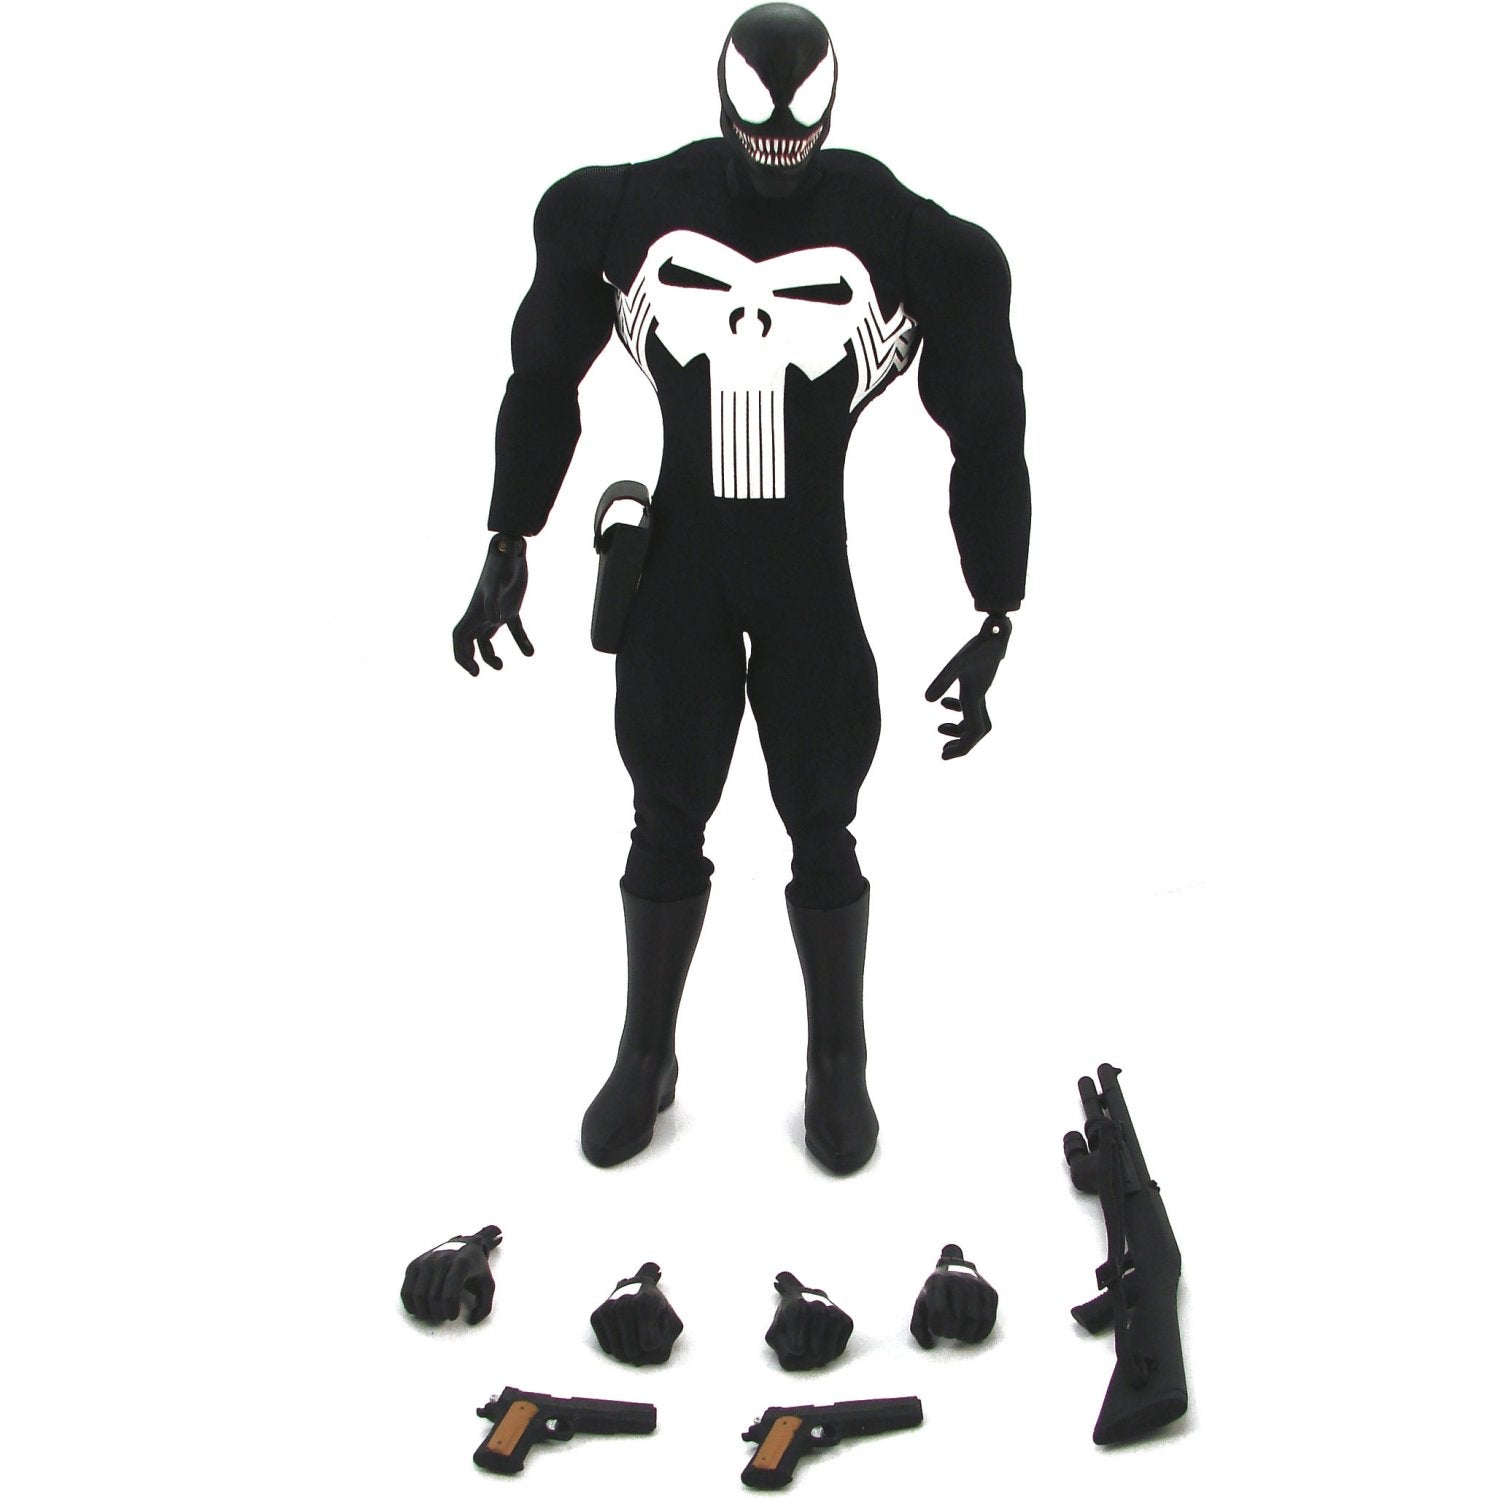 Medicom 1/6 RAH Marvel Venom (Punisher Ver.) 12" Real Action Heroes Action Figure 3